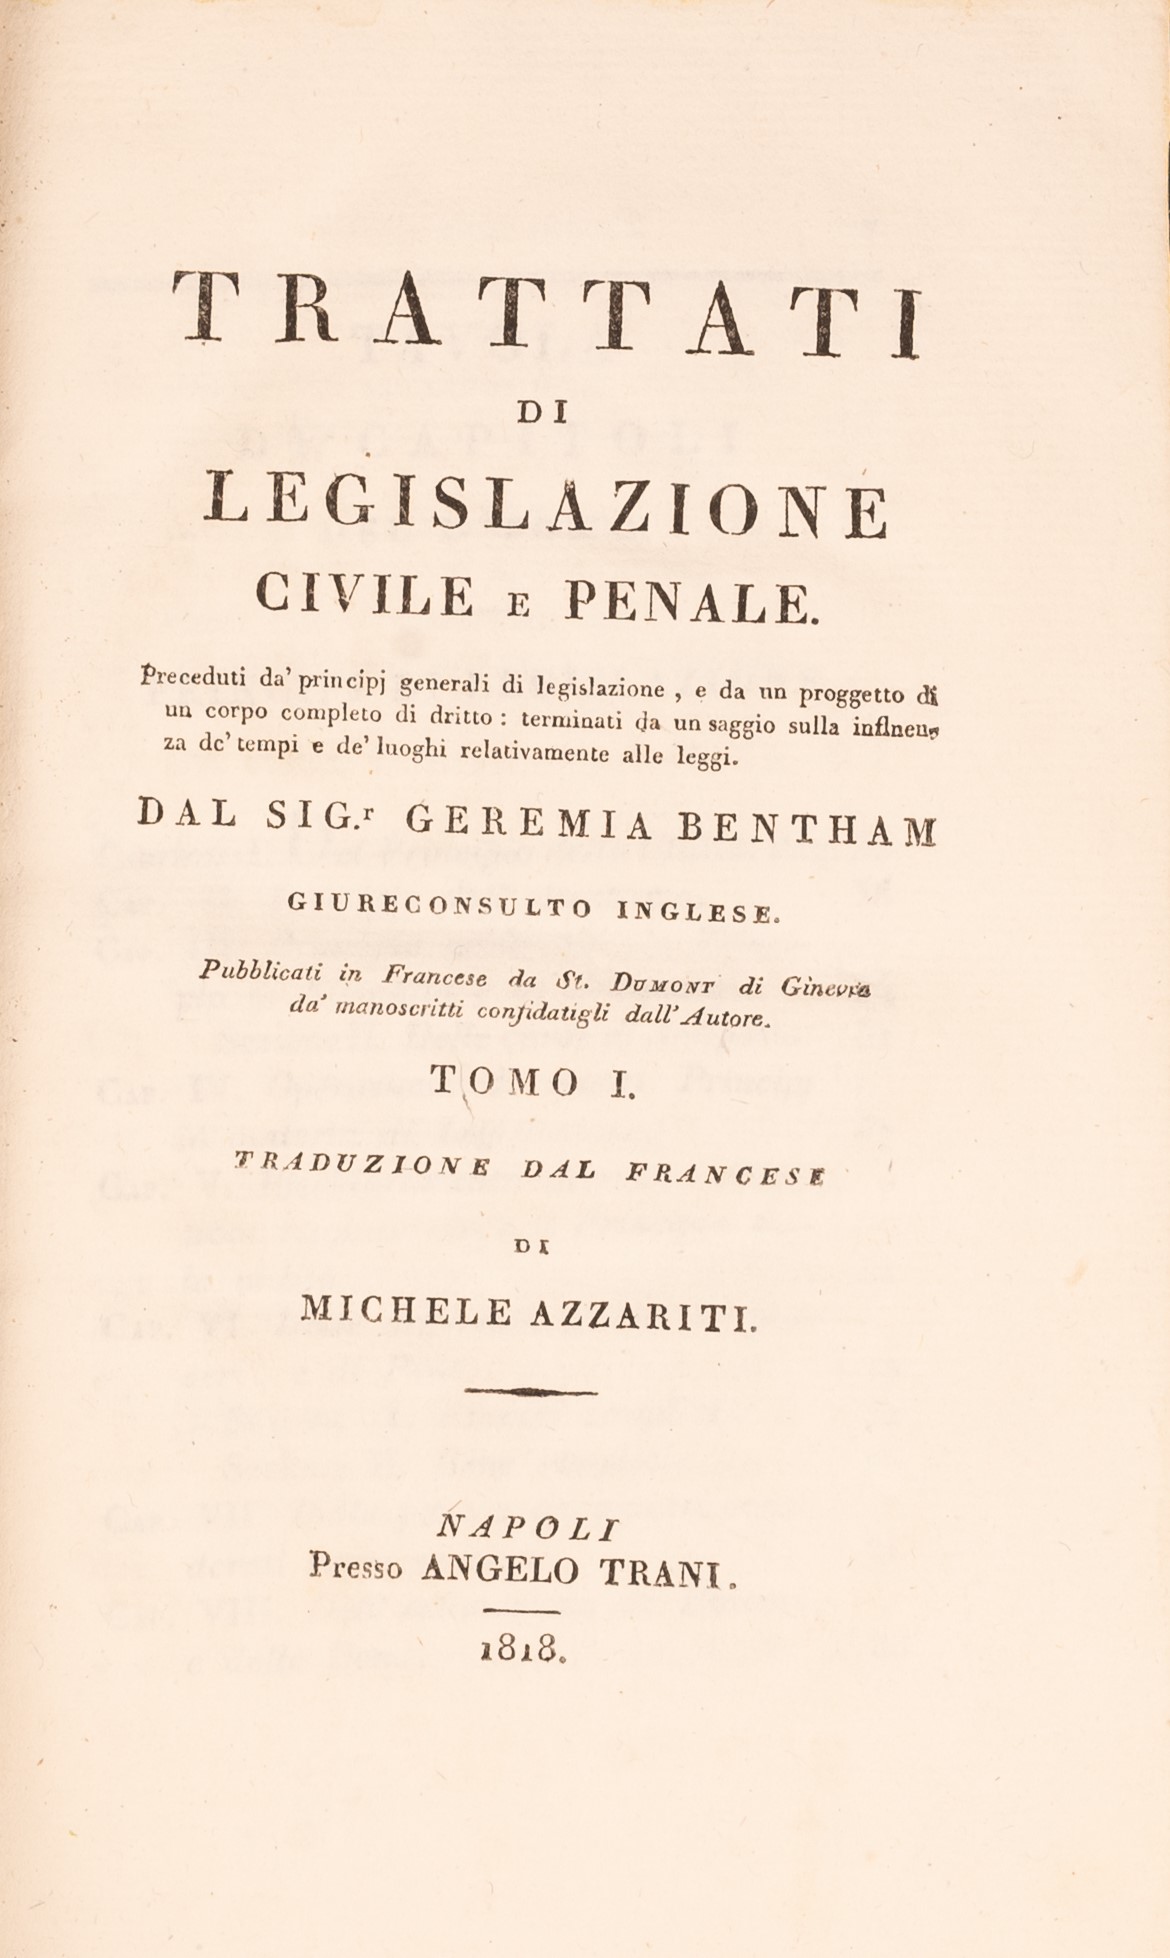 Trattati di legislazione civile e penale (...) del Sig. Geremia Bentham giureconsulto inglese, tradu - Bild 3 aus 3